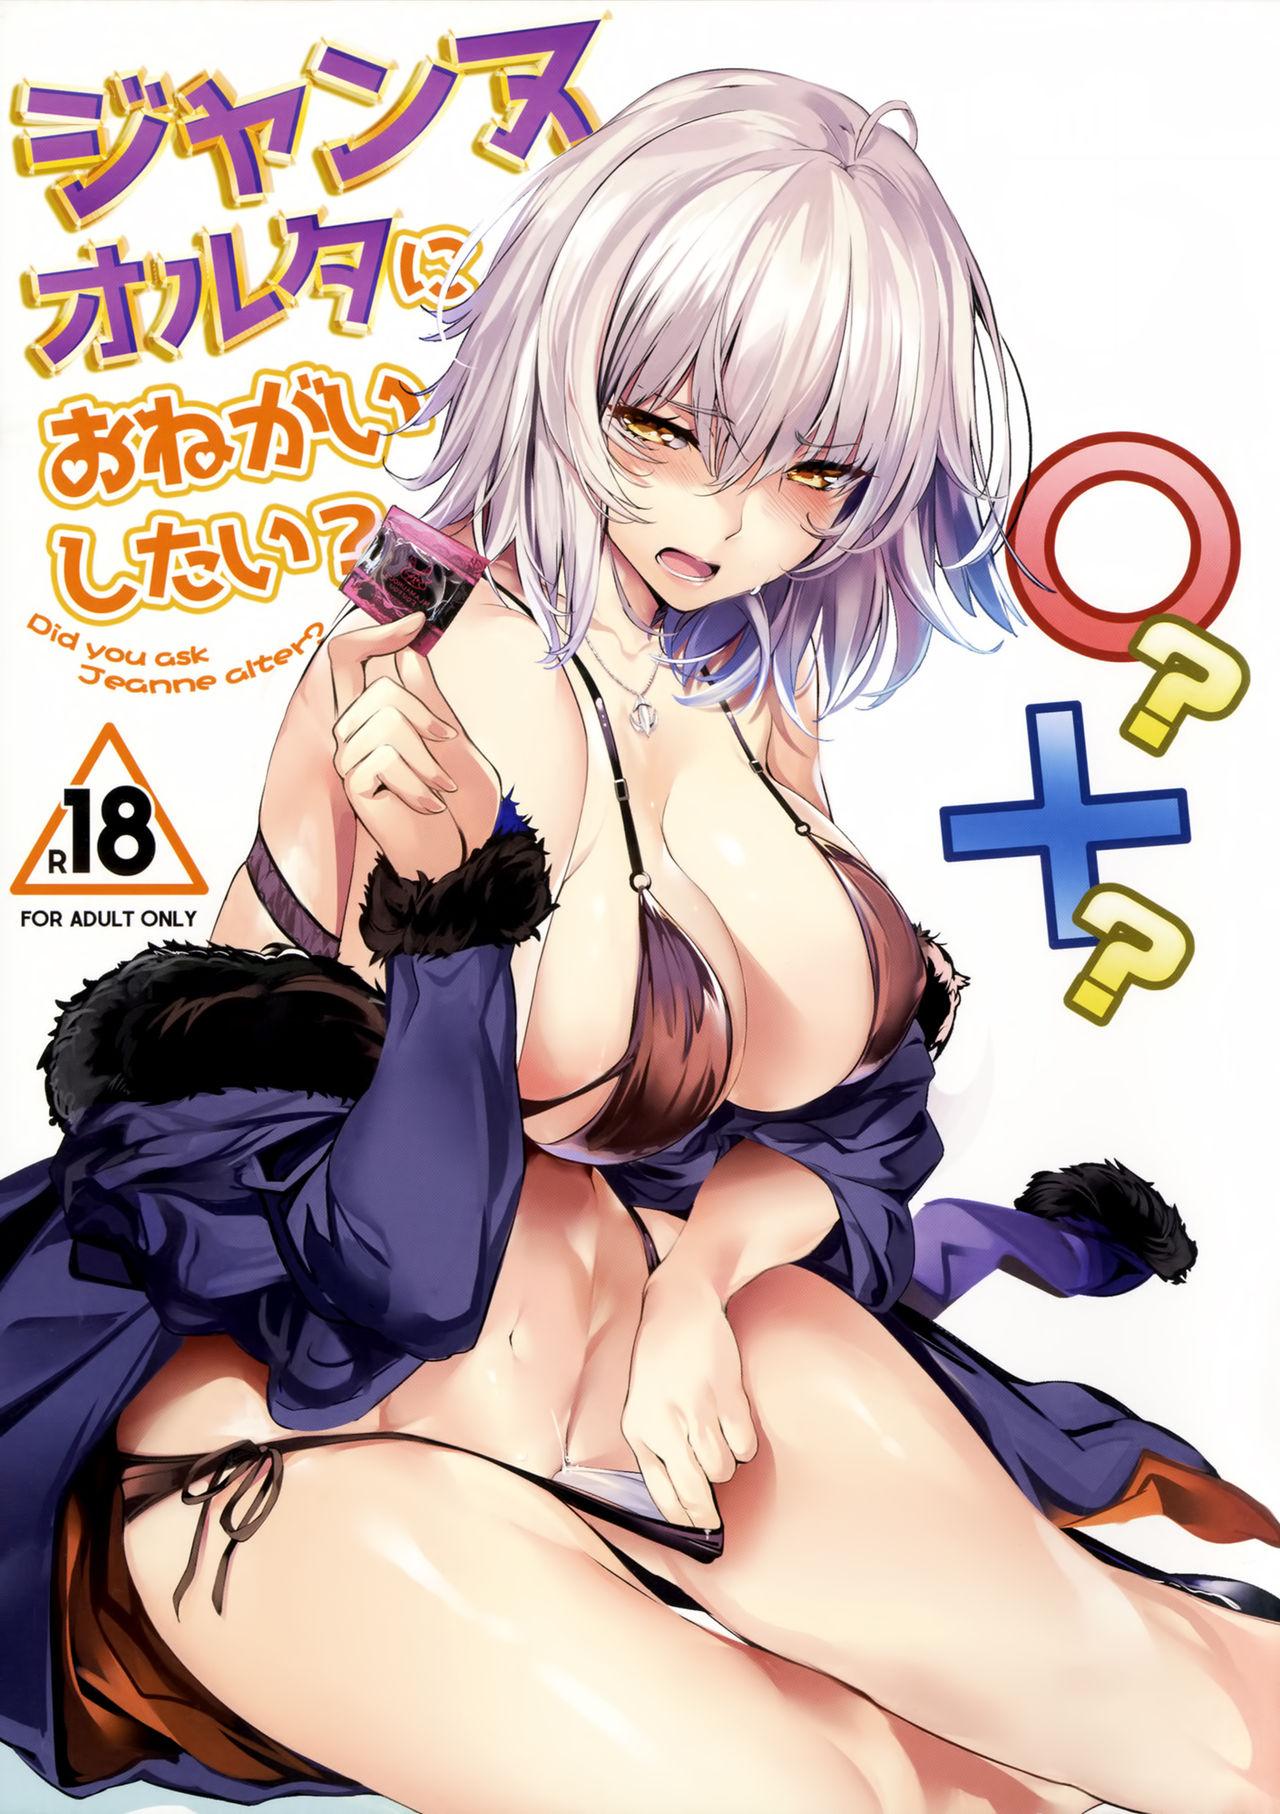 Rough Jeanne Alter ni Onegai Shitai? + Omake Shikishi - Fate grand order Boss - Picture 1